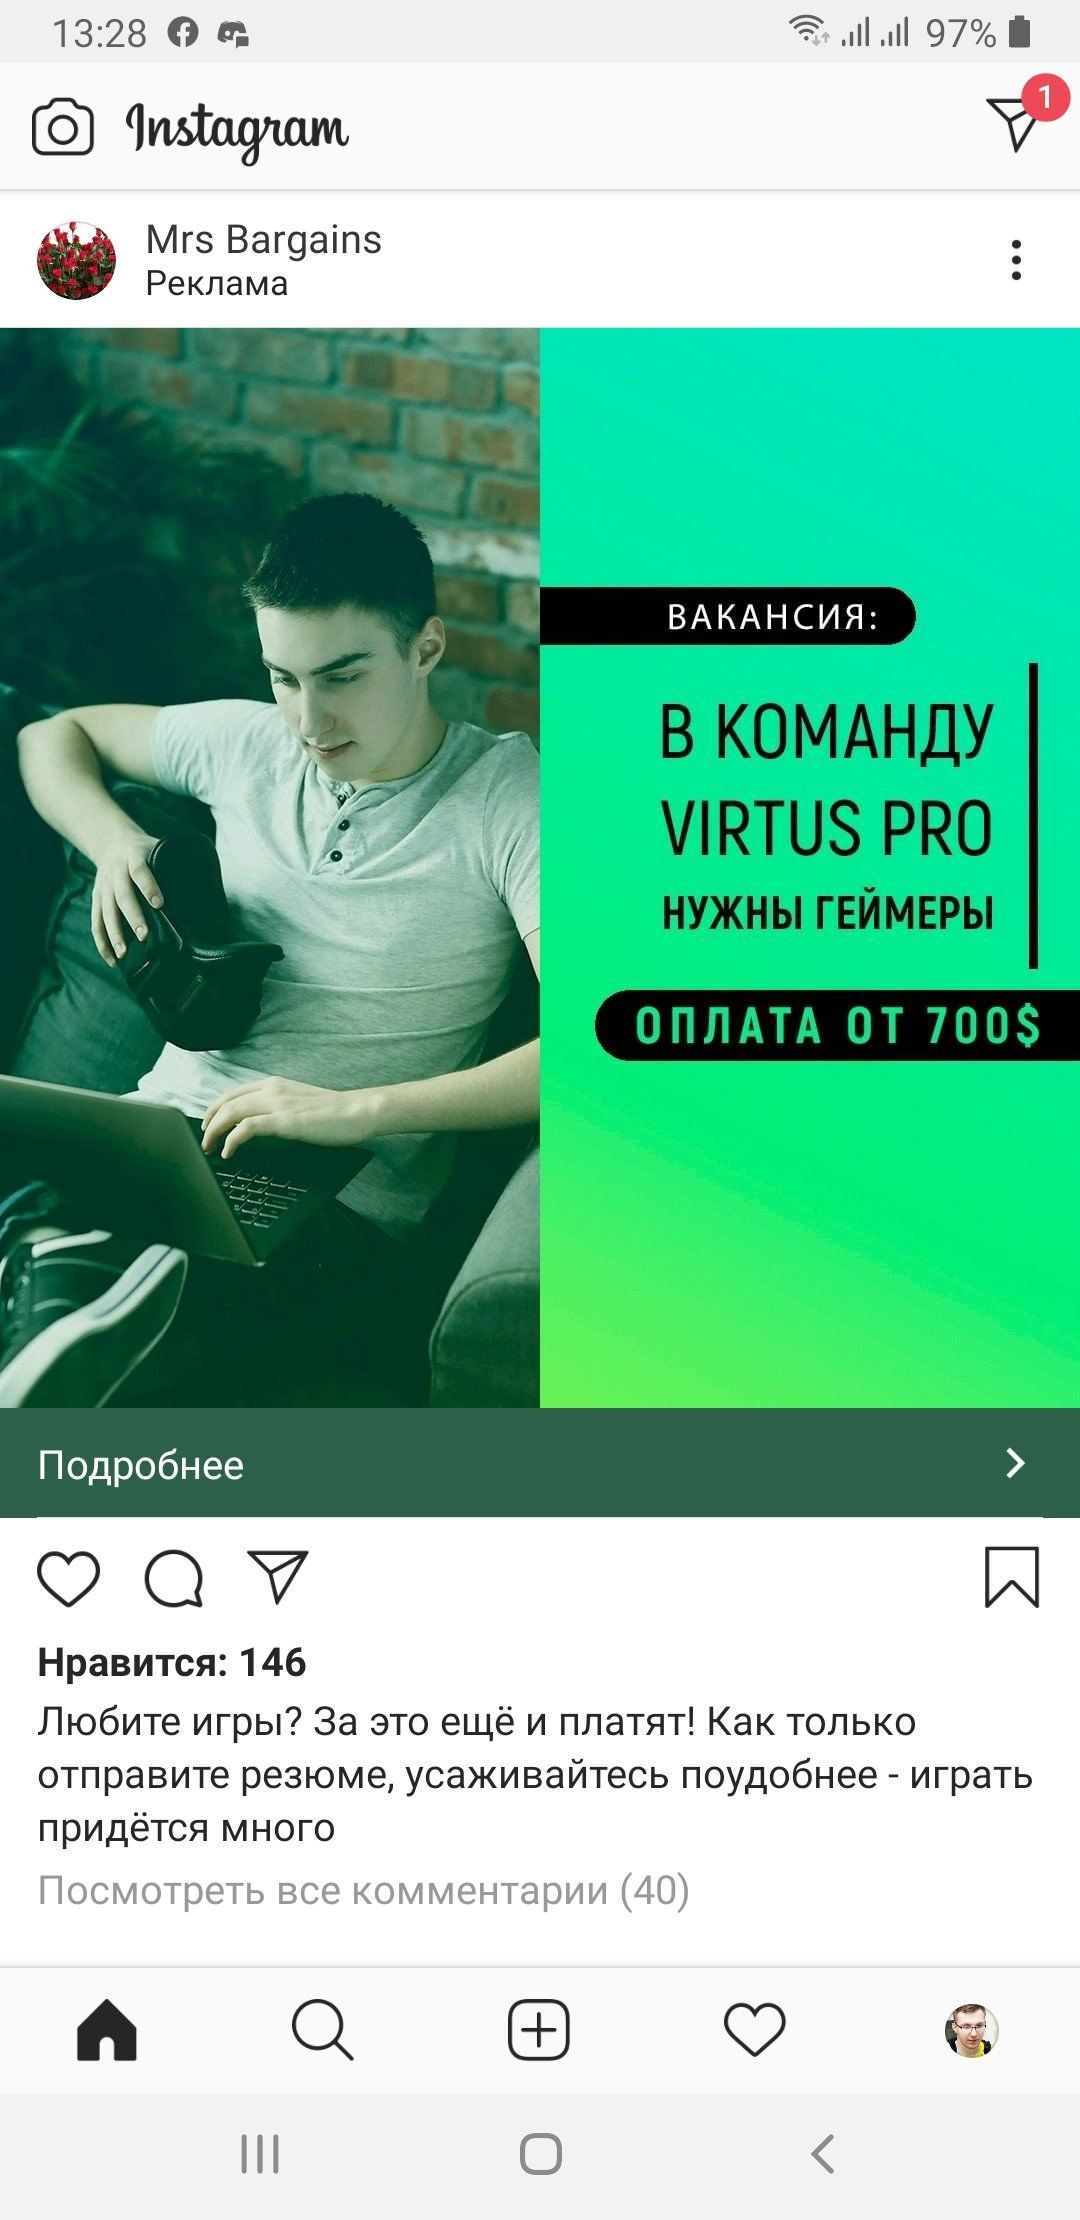 Скриншот фейкового объявления в Instagram.
Скриншот: Cybersport.ru